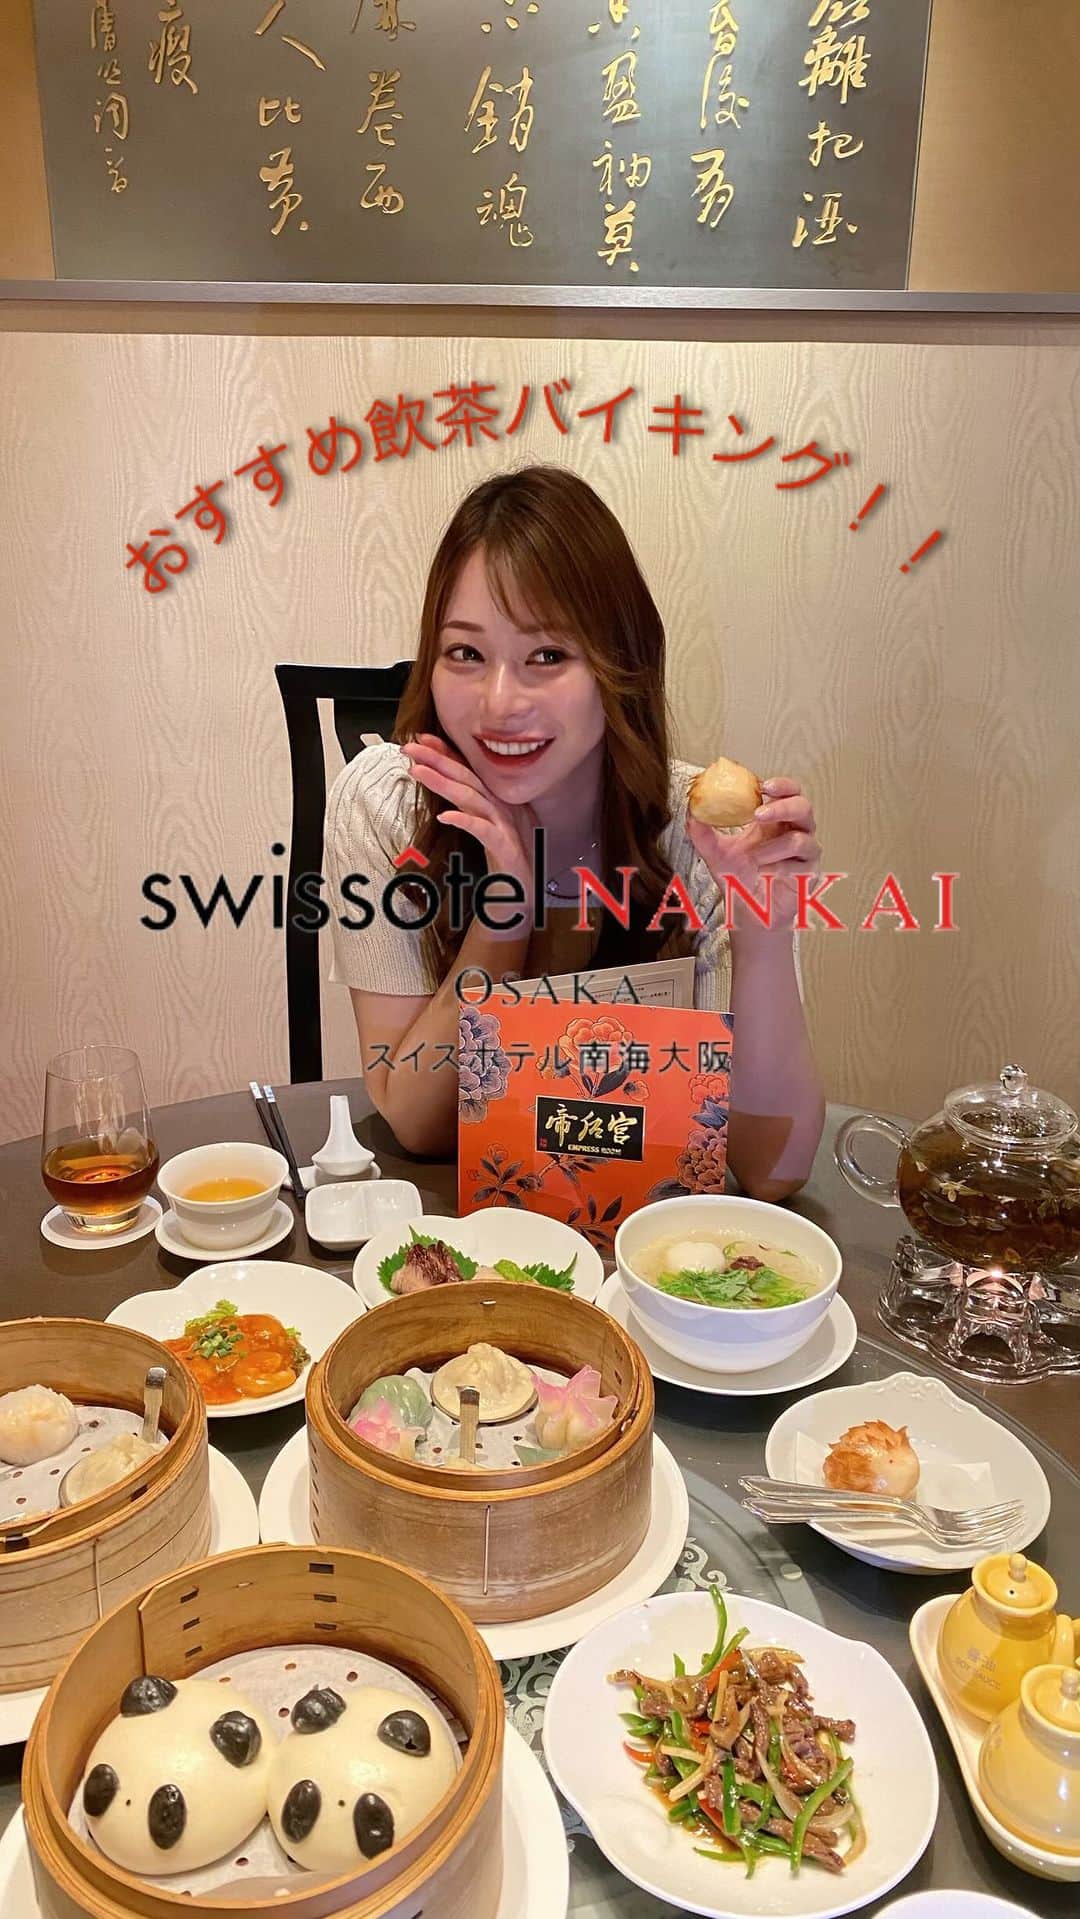 karen okajimaのインスタグラム：「@swissotelnankaiosaka_official の中華バイキングがすごい👲🥟💓！！  スイスホテル南海大阪の帝后宮(エンプレスルーム) の飲茶オーダーバイキングに行ってきたっ🥟  前から大人気のバイキングなんだけど、最近リニューアルして 蟹肉入り焼売や、牛肉のバラ煮込みや、シンガポール風焼きそばなどの 新メニューも登場し、デザートを合わせて77種の食べ放題になったよ💕 ＋1400円で、なんと！99種類にもなります🥰🫶  食べやすくって、辛さも控えめなので子供ちゃんにも食べやすい味付けになってた！！  飲茶が全部美味しかったー☺️✨  パンダまんじゅうとハリネズミまんじゅうが 可愛くてマストで頼んでほしいデザート🐼🦔✨ 新メニューのエッグタルトも甘さ控えめで とても美味しかったのでおすすめ💓  テーブルも広くて、個室もあるので大人数でも 来れて駅近でおすすめのランチだよ！！  ランチディナーも月火限定でしてみるみたい👏 次は4人とかで行きたいな〜！！🤤  飲茶 ランチオーダーバイキング 💰平日大人 5400円 お子様(4-12歳)2700円 💰土日祝 大人6000円 お子様(4-12歳)3000円 どちらも＋1400円で1品メニュー(22種類)も食べ放題！  月火限定 飲茶プレミアディナーオーダーバイキング 💰大人 8100円 お子様(4-12歳)4050円 ライフ＆スタイル及びフィットネスメンバー様、ご宿泊お客様は特別6900円  #PR#スイスホテル南海大阪 #エンプレスルーム #港式飲茶 #飲茶 #ハイキング #dimsumlover #大阪美食 #swissotelnankaiosaka #osakahotel #ホテルランチ」